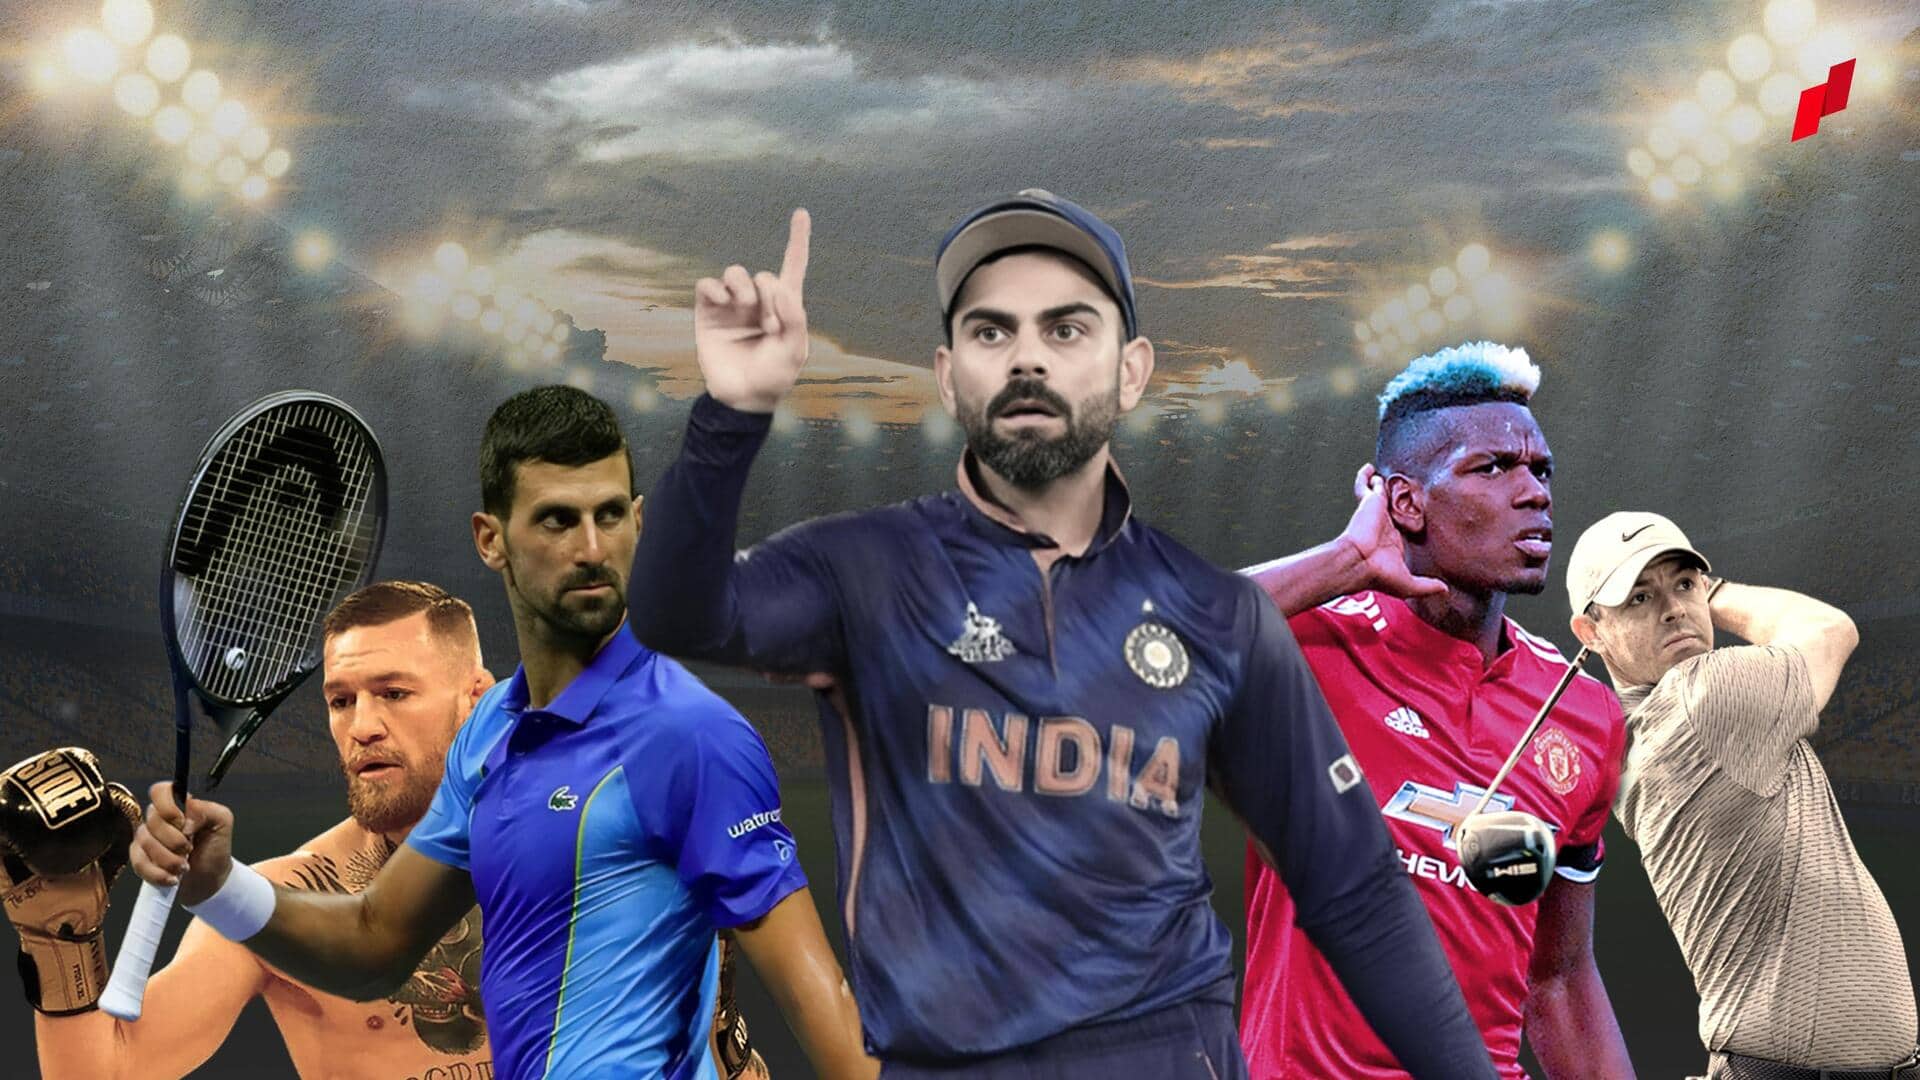 Sports RoundUp: கிரிக்கெட்டில் இந்தியா வெற்றி; தொடர்ந்து 3வது பார்முலா-1 பட்டம் வென்ற மேக்ஸ் வெர்ஸ்ட்டப்பன்; மேலும் பல முக்கிய செய்திகள்